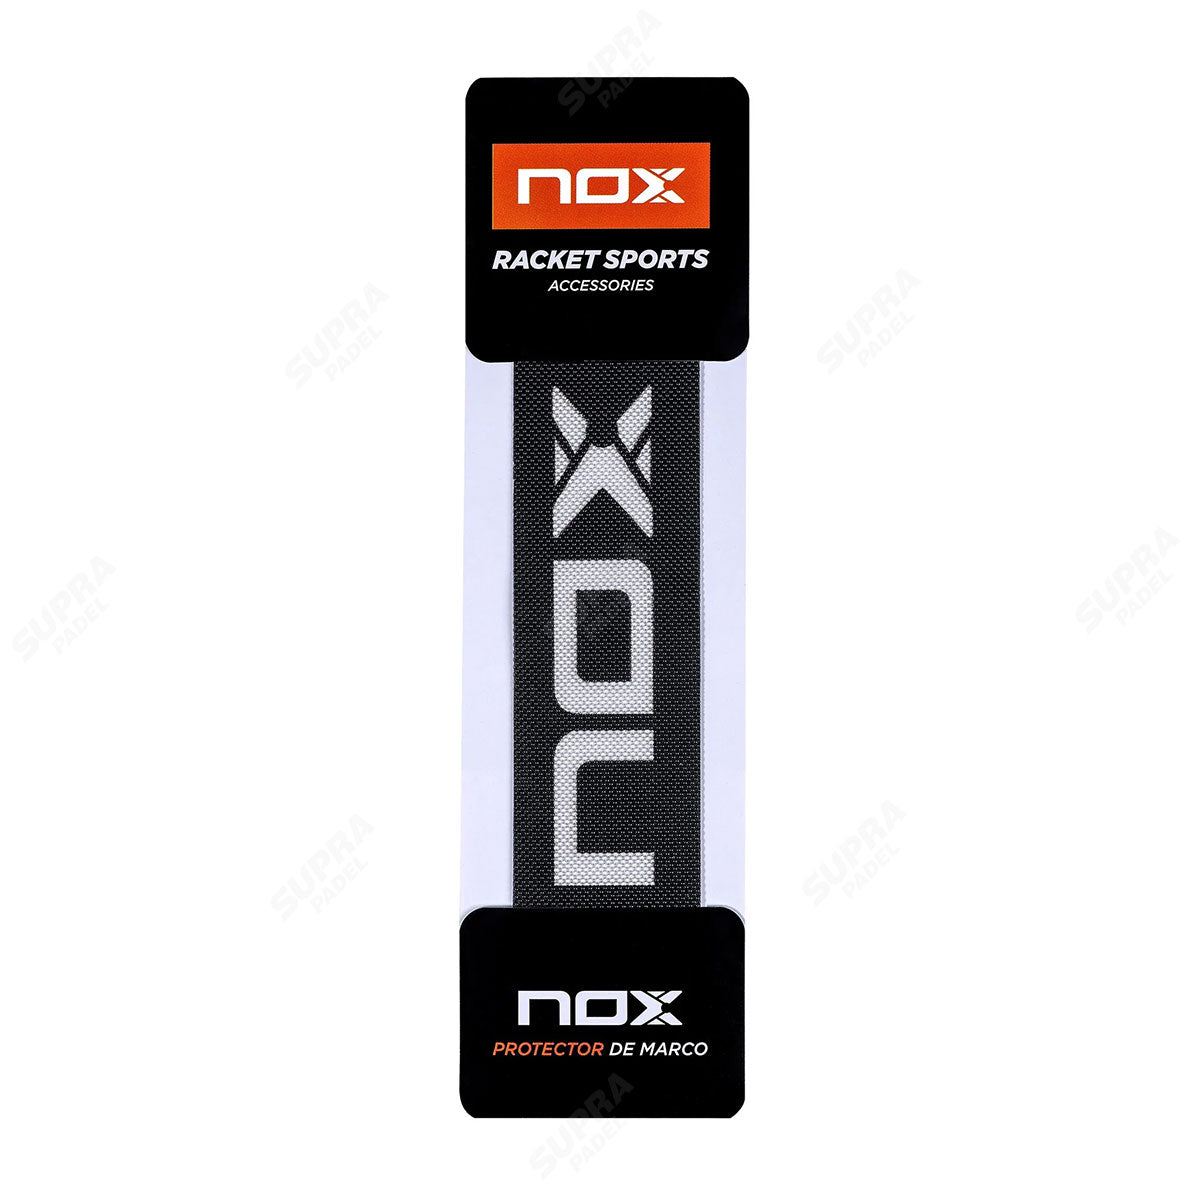 NOX 2 Muñequeras Largas Padel Nox Pro Series Confort Negras Xl